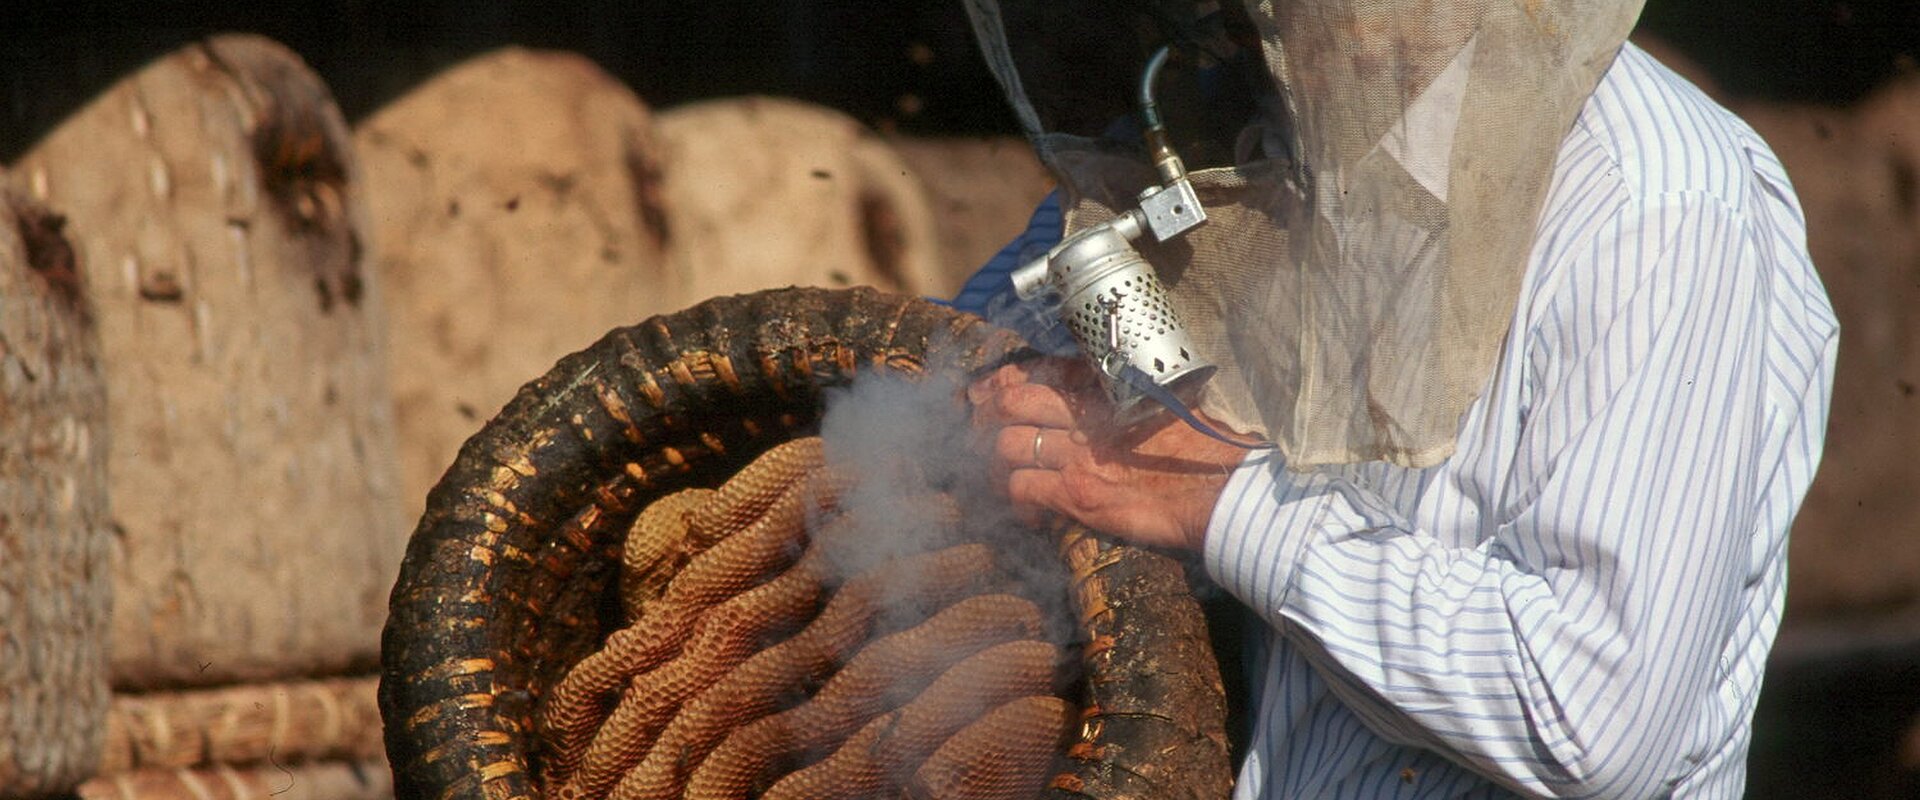 Ein Imker bläst Rauch in einen umgedrehten Bienenkorb (Lüneburger Stülper), der mit Honigwaben gefüllt ist